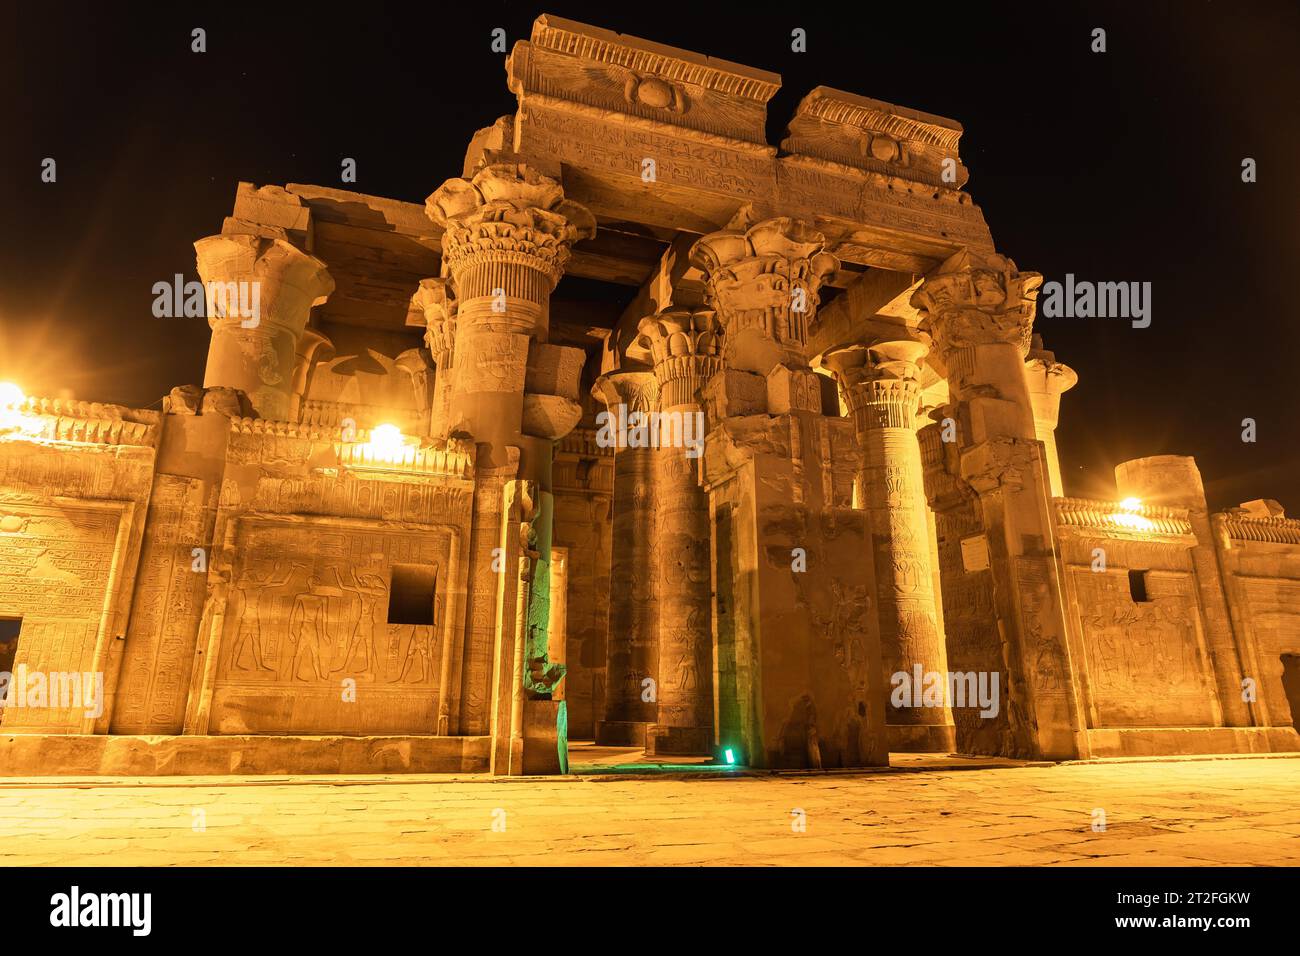 Besuchen Sie bei Nacht den wunderschönen Tempel von KOM Ombo, den Tempel, der den Göttern Sobek und Horus gewidmet ist. In der Stadt KOM Ombo bei Aswer, Ägypten Stockfoto